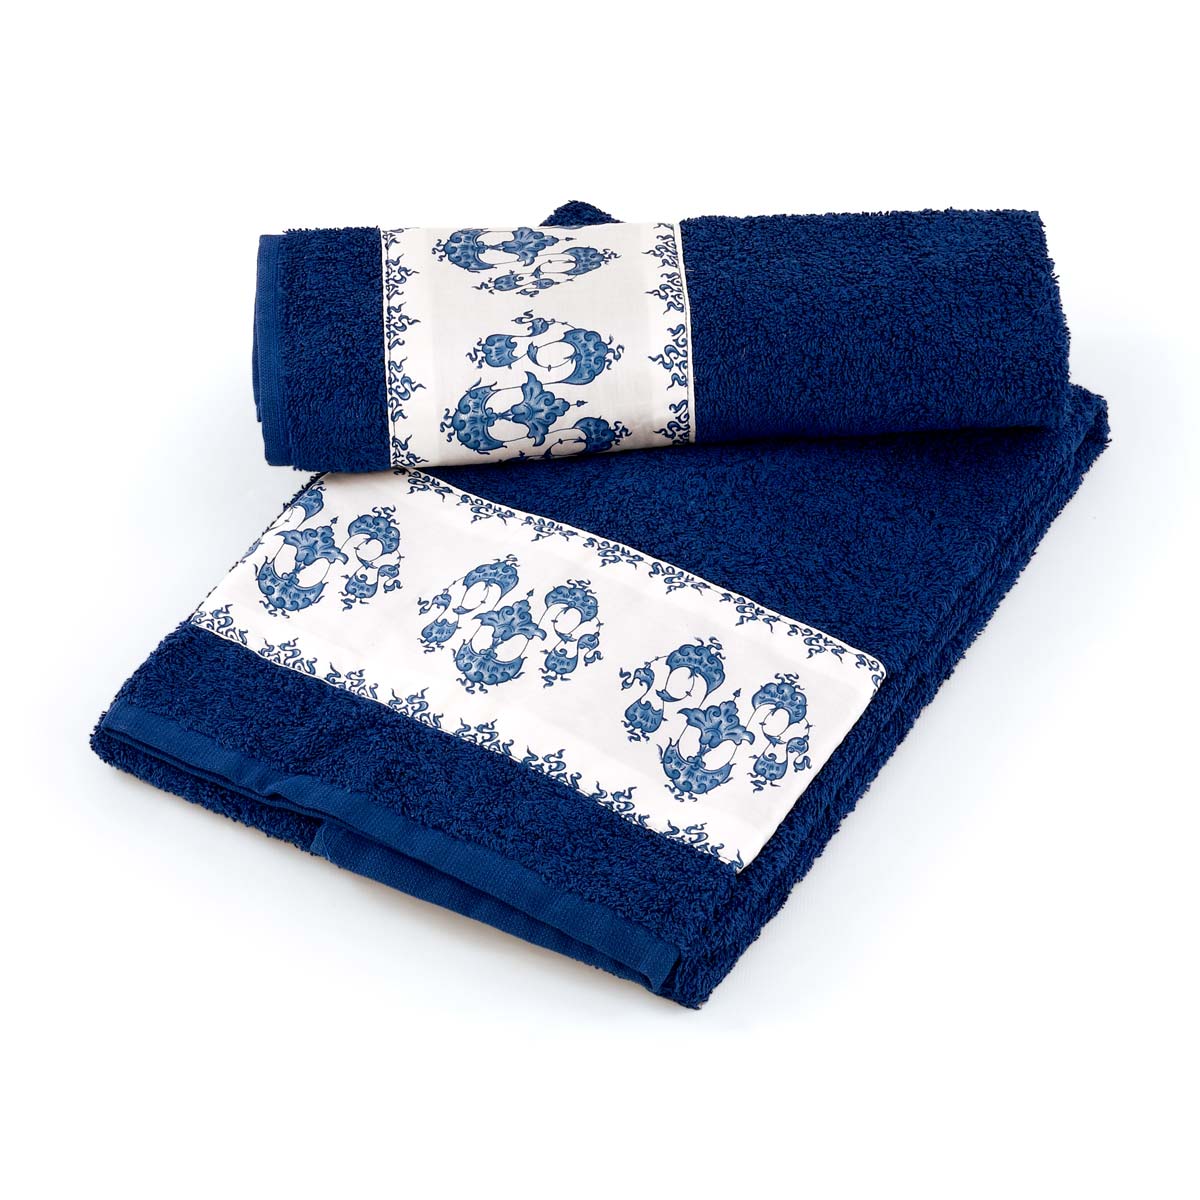 Coppia asciugamani da bagno in spugna di colore blu con balza in raso